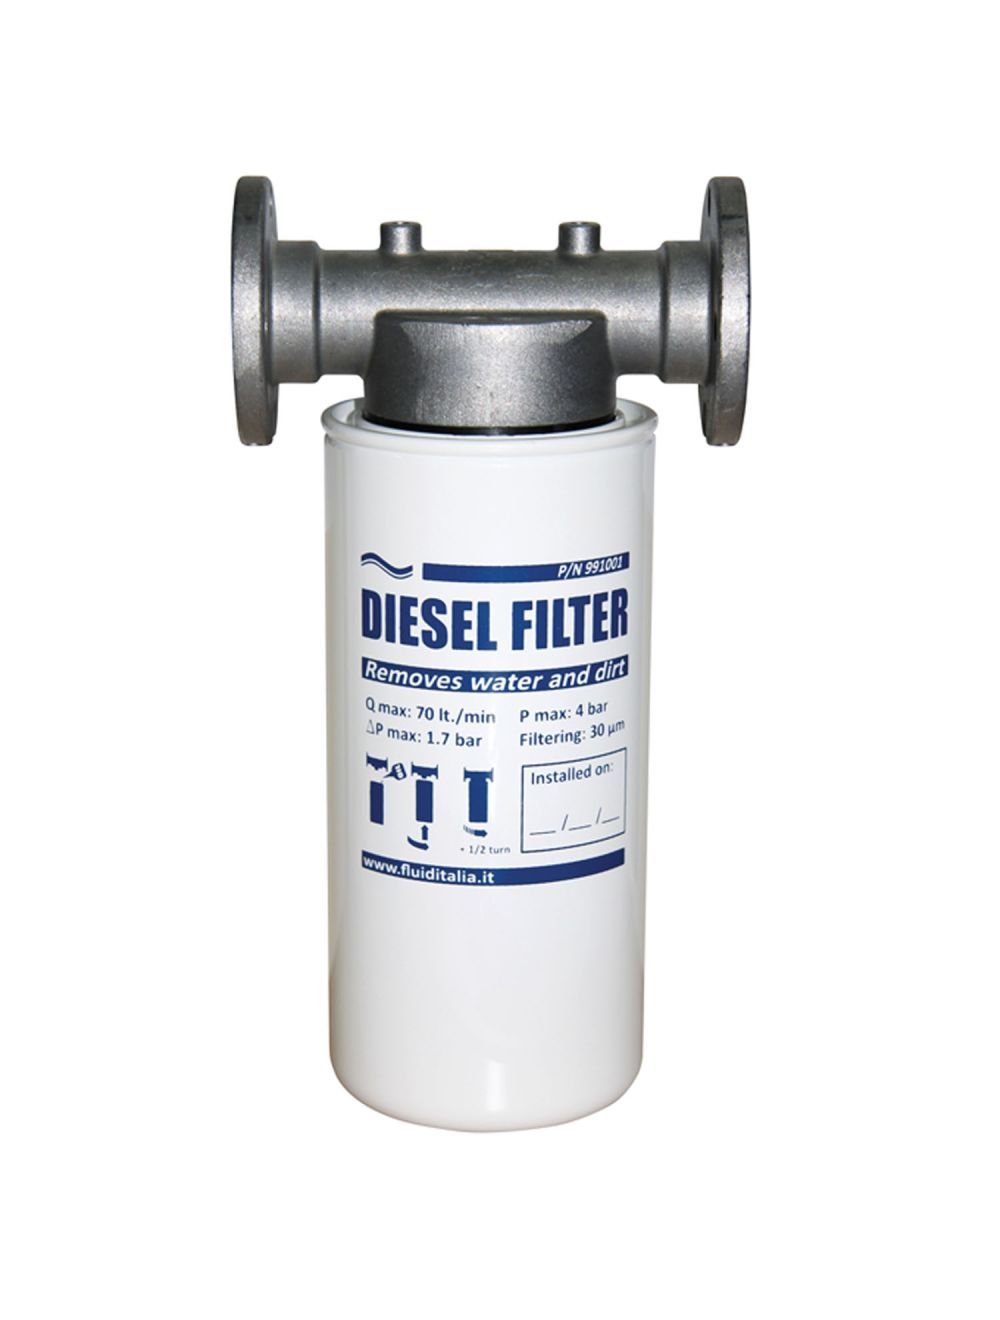 Diesel Filter Holder Only